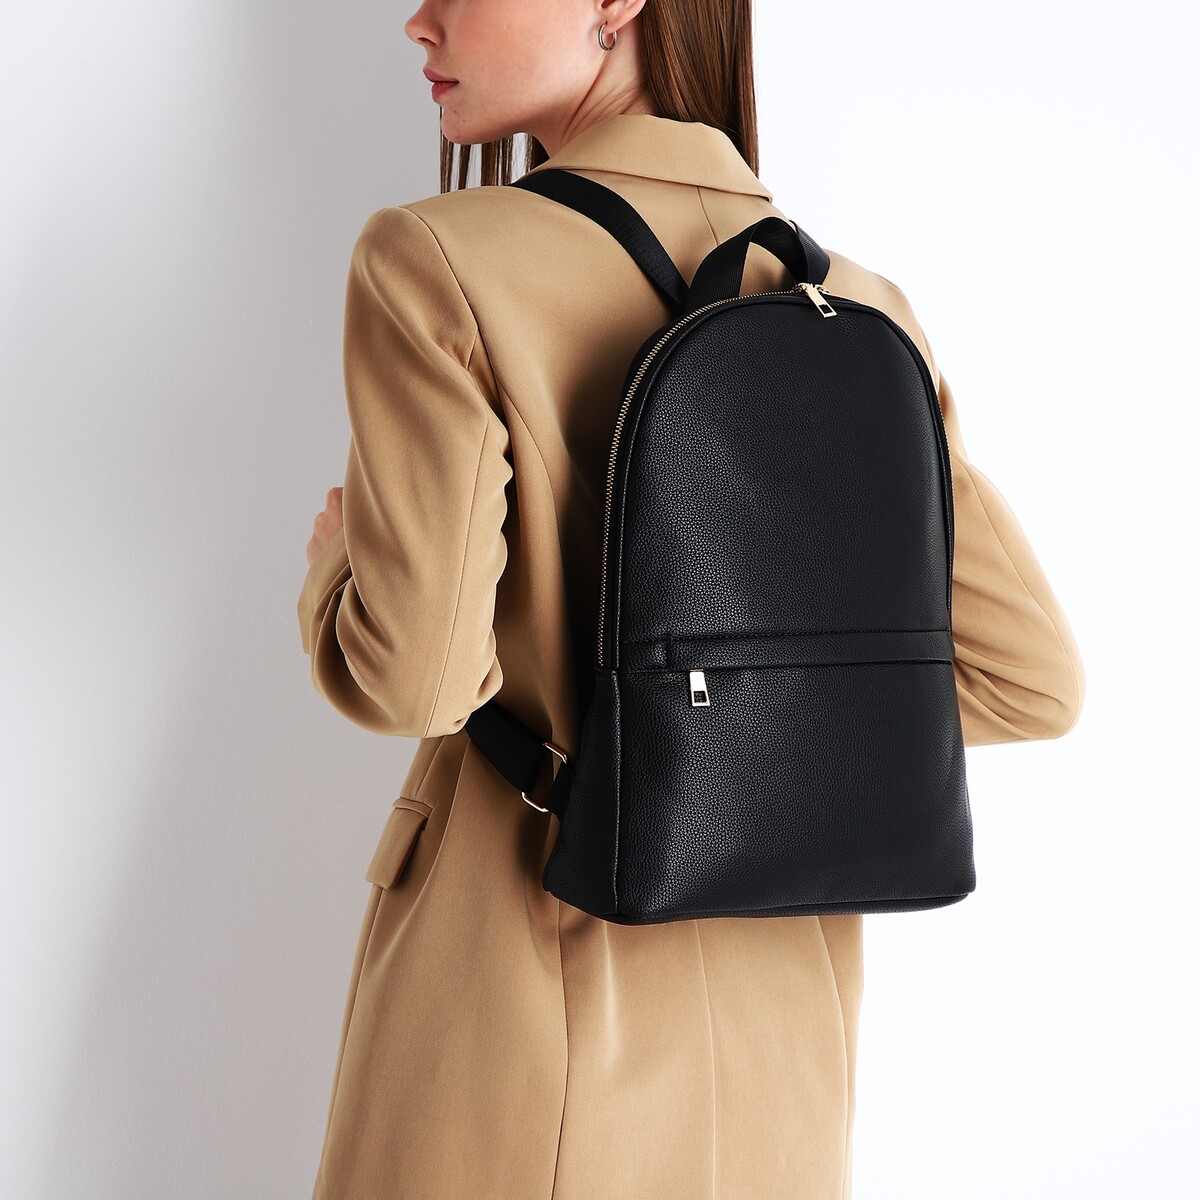 Рюкзак женский из искусственной кожи на молнии, 2 кармана, цвет черный рюкзак женский из искусственной кожи на молнии 4 кармана сумка коричневый